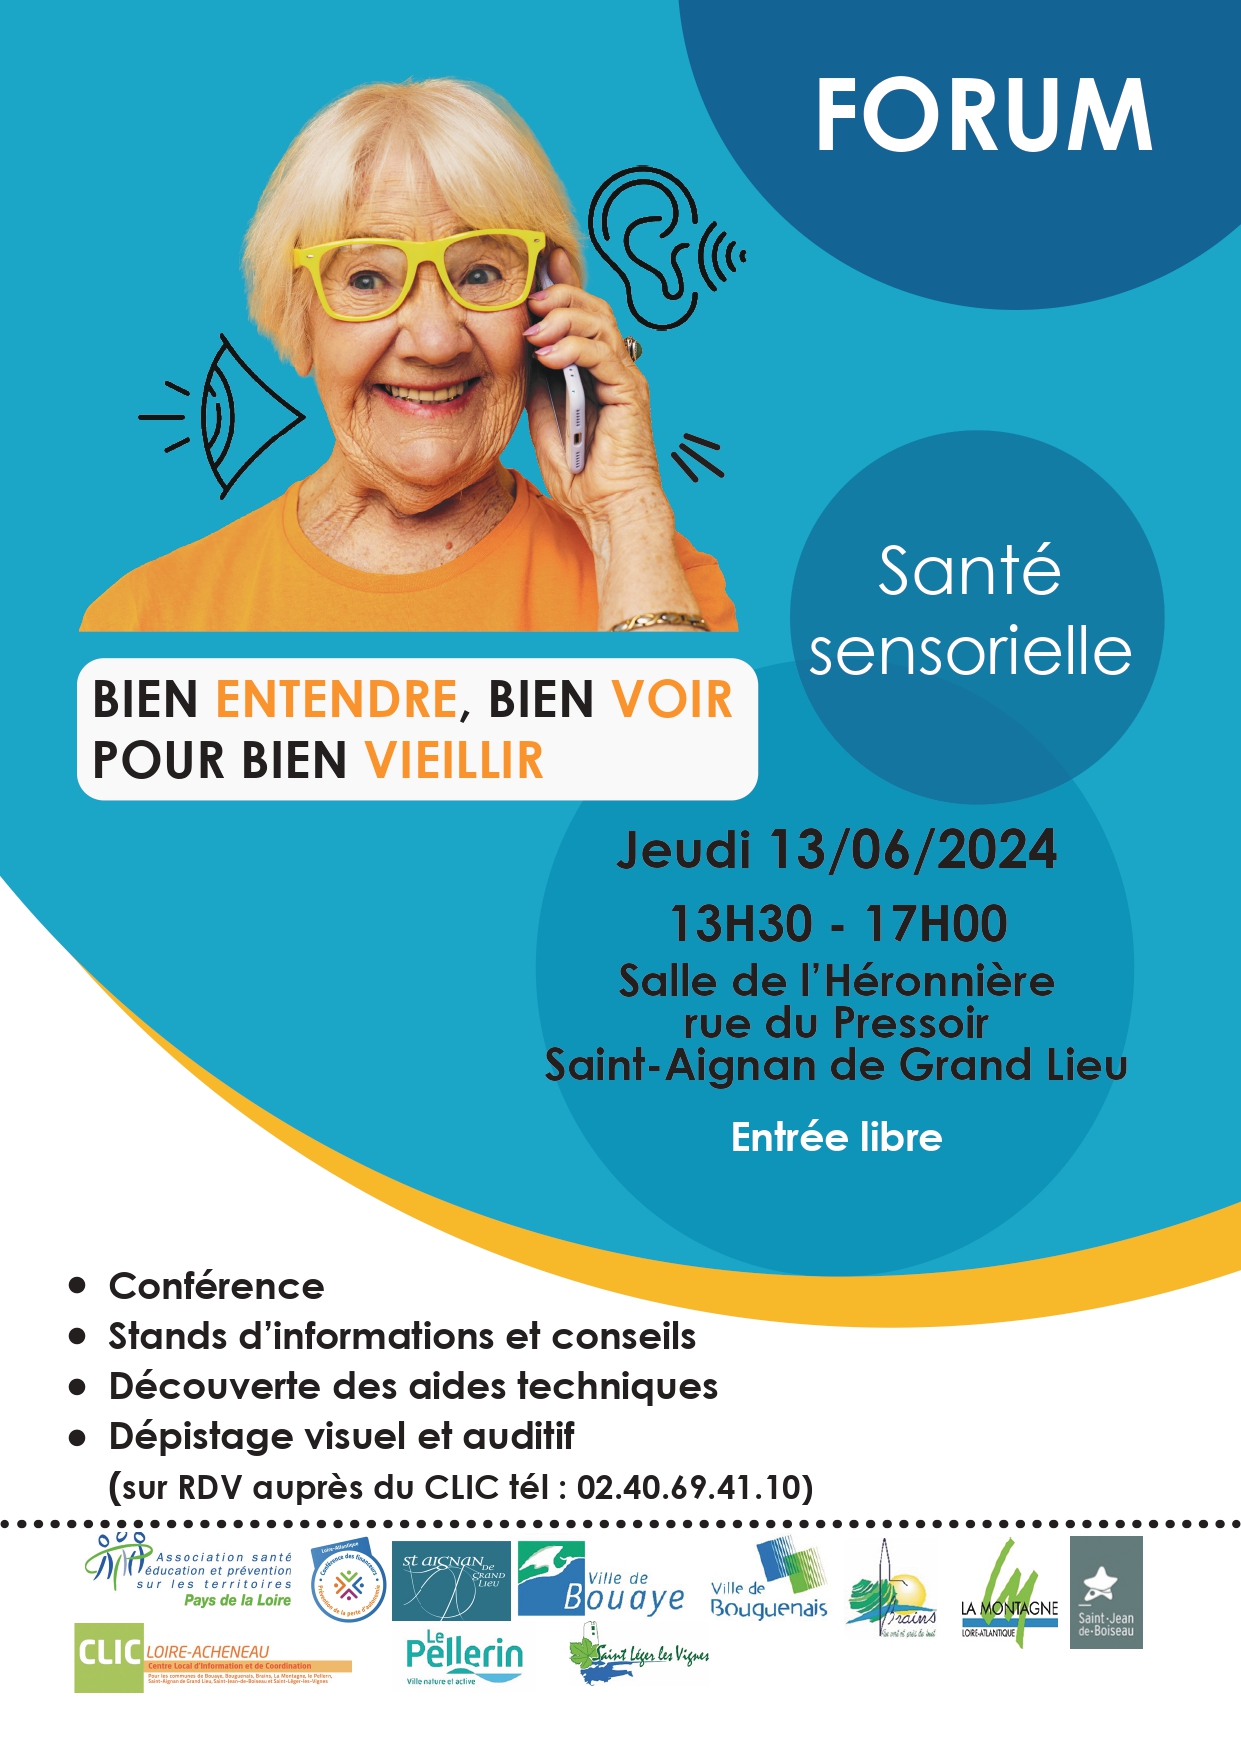 CLIC Loire-Acheneau Forum santé sensorielle 13.06.2024 Affiche A3_A4_page-0001.jpg